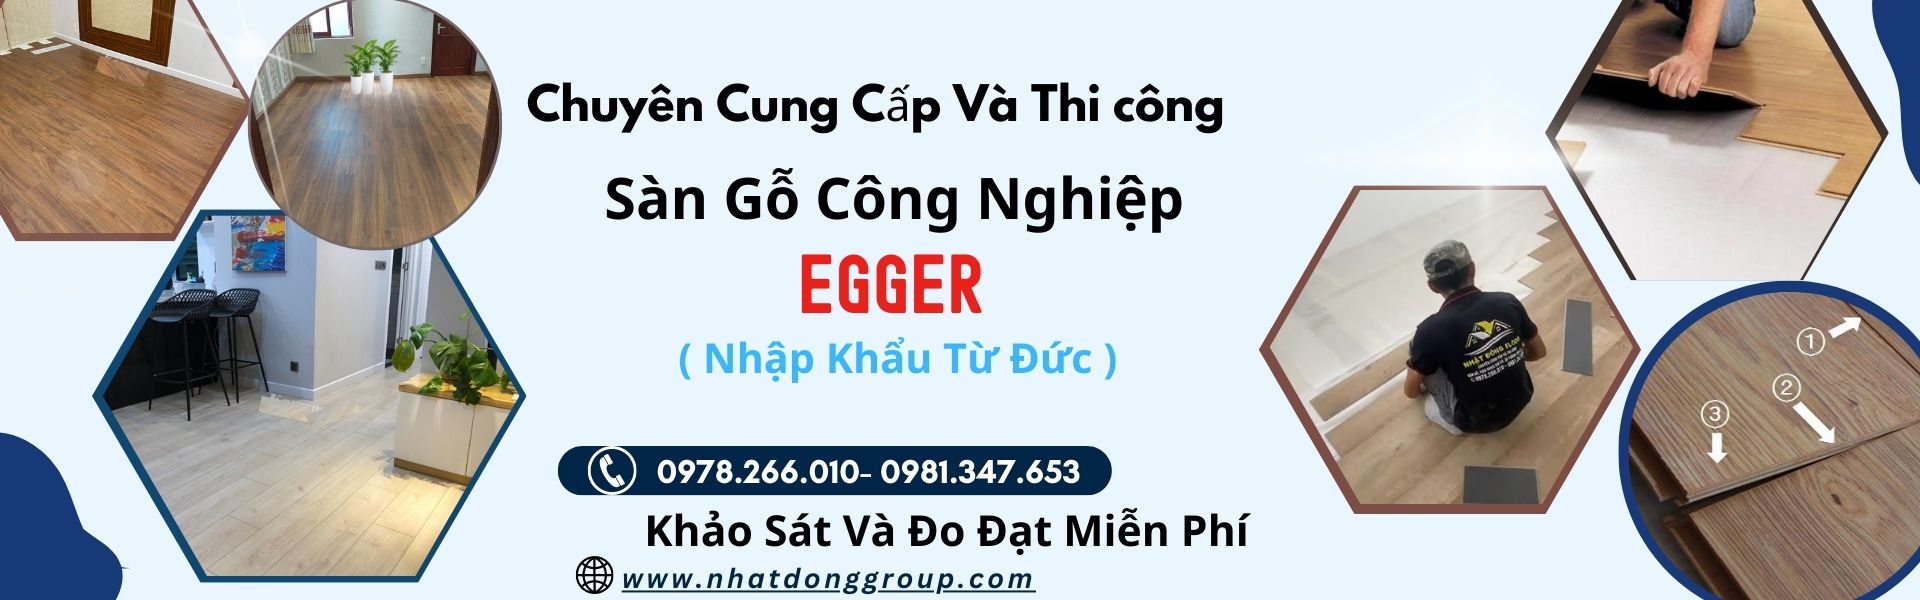 Sàn Gỗ Công Nghiệp Egger Tại Hồ Chí Minh,Long An , Bình Dương, Đồng Nai